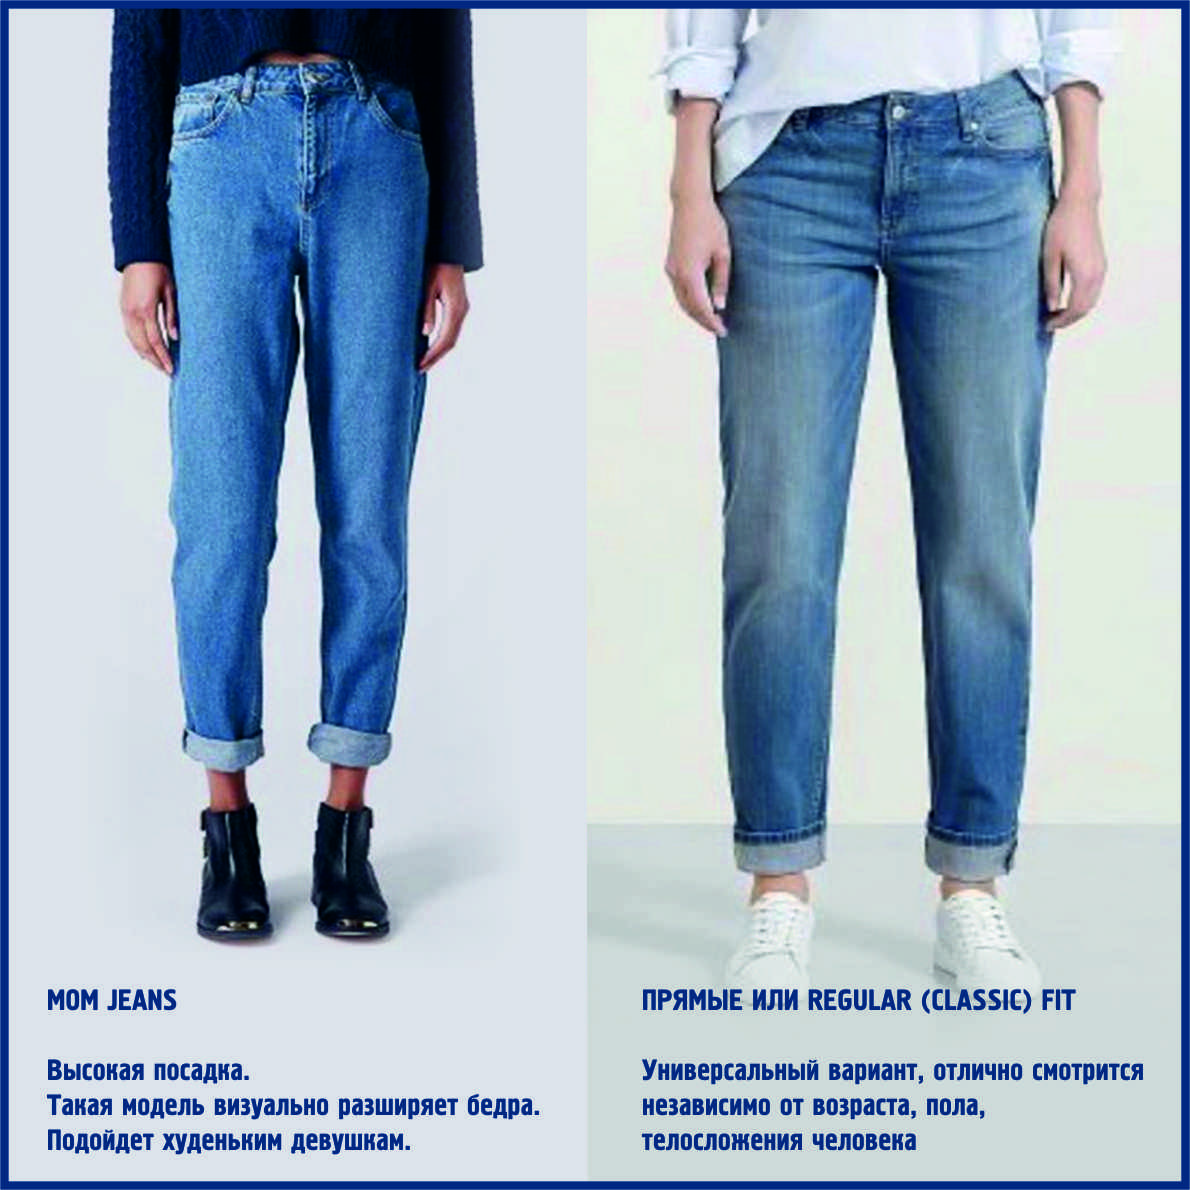 Как выбрать женские джинсы правильно - 5 важных правил